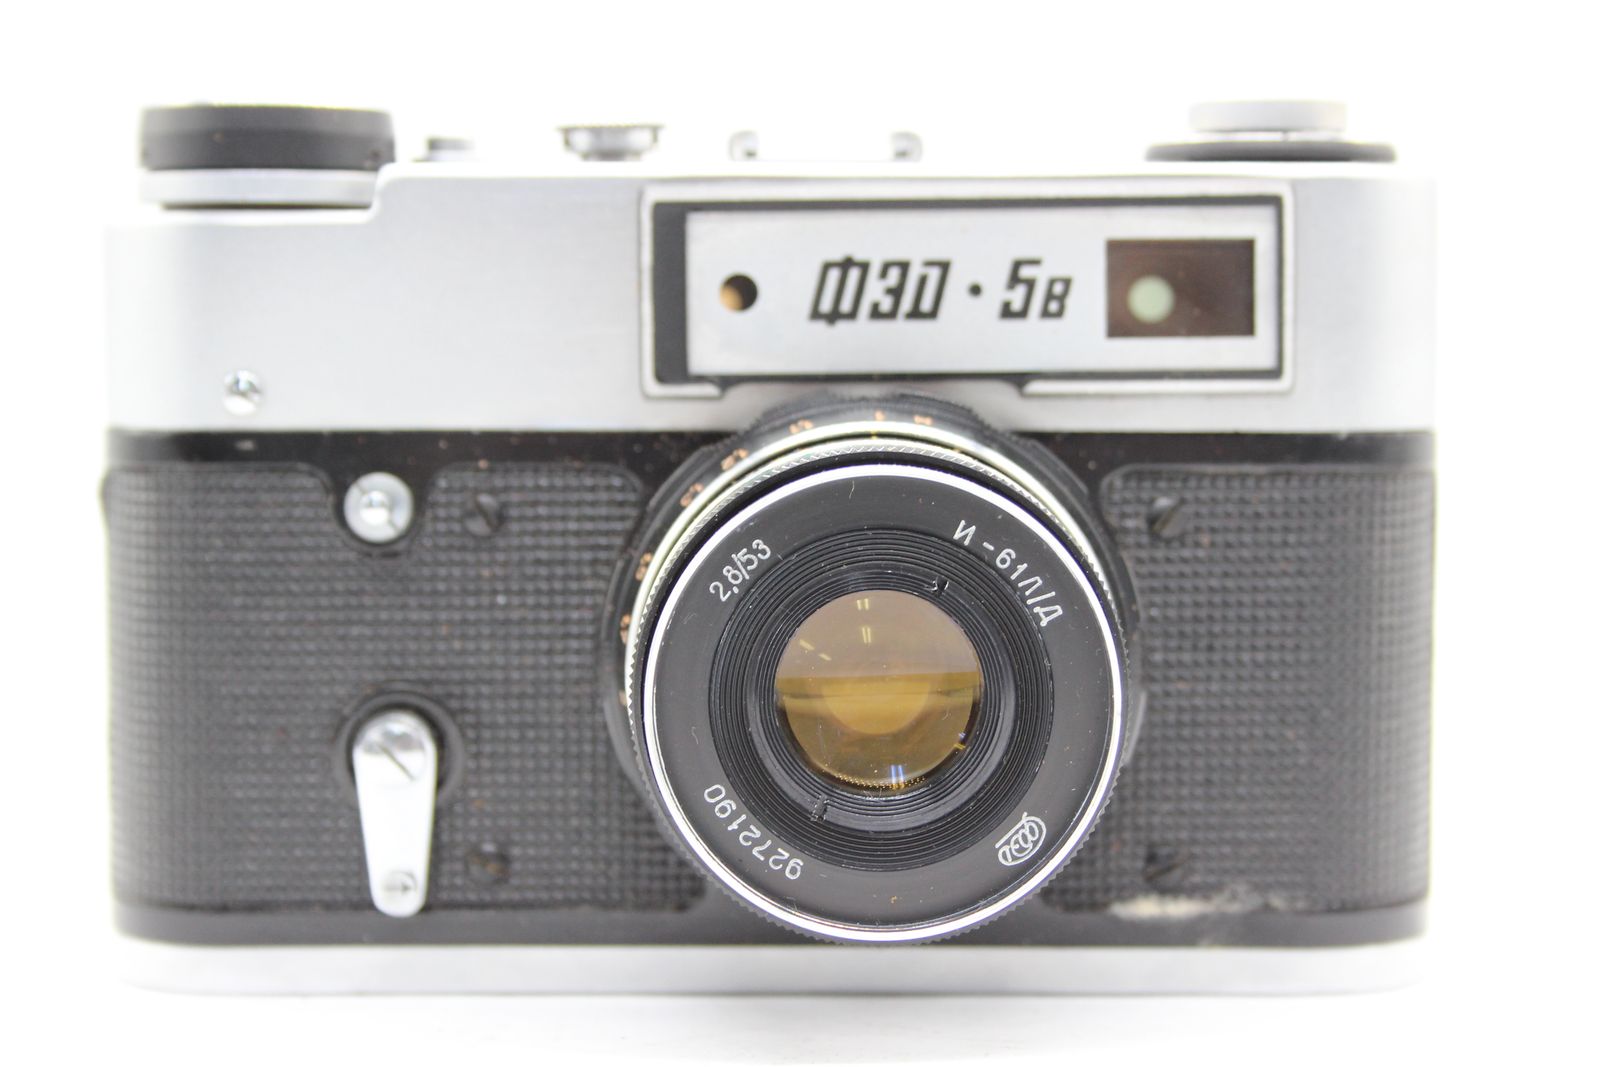 返品保証】 【元箱付き】フェド FED 5B Industar-61 53mm F2.8 ケース付き レンジファインダー カメラ s6118 -  メルカリ